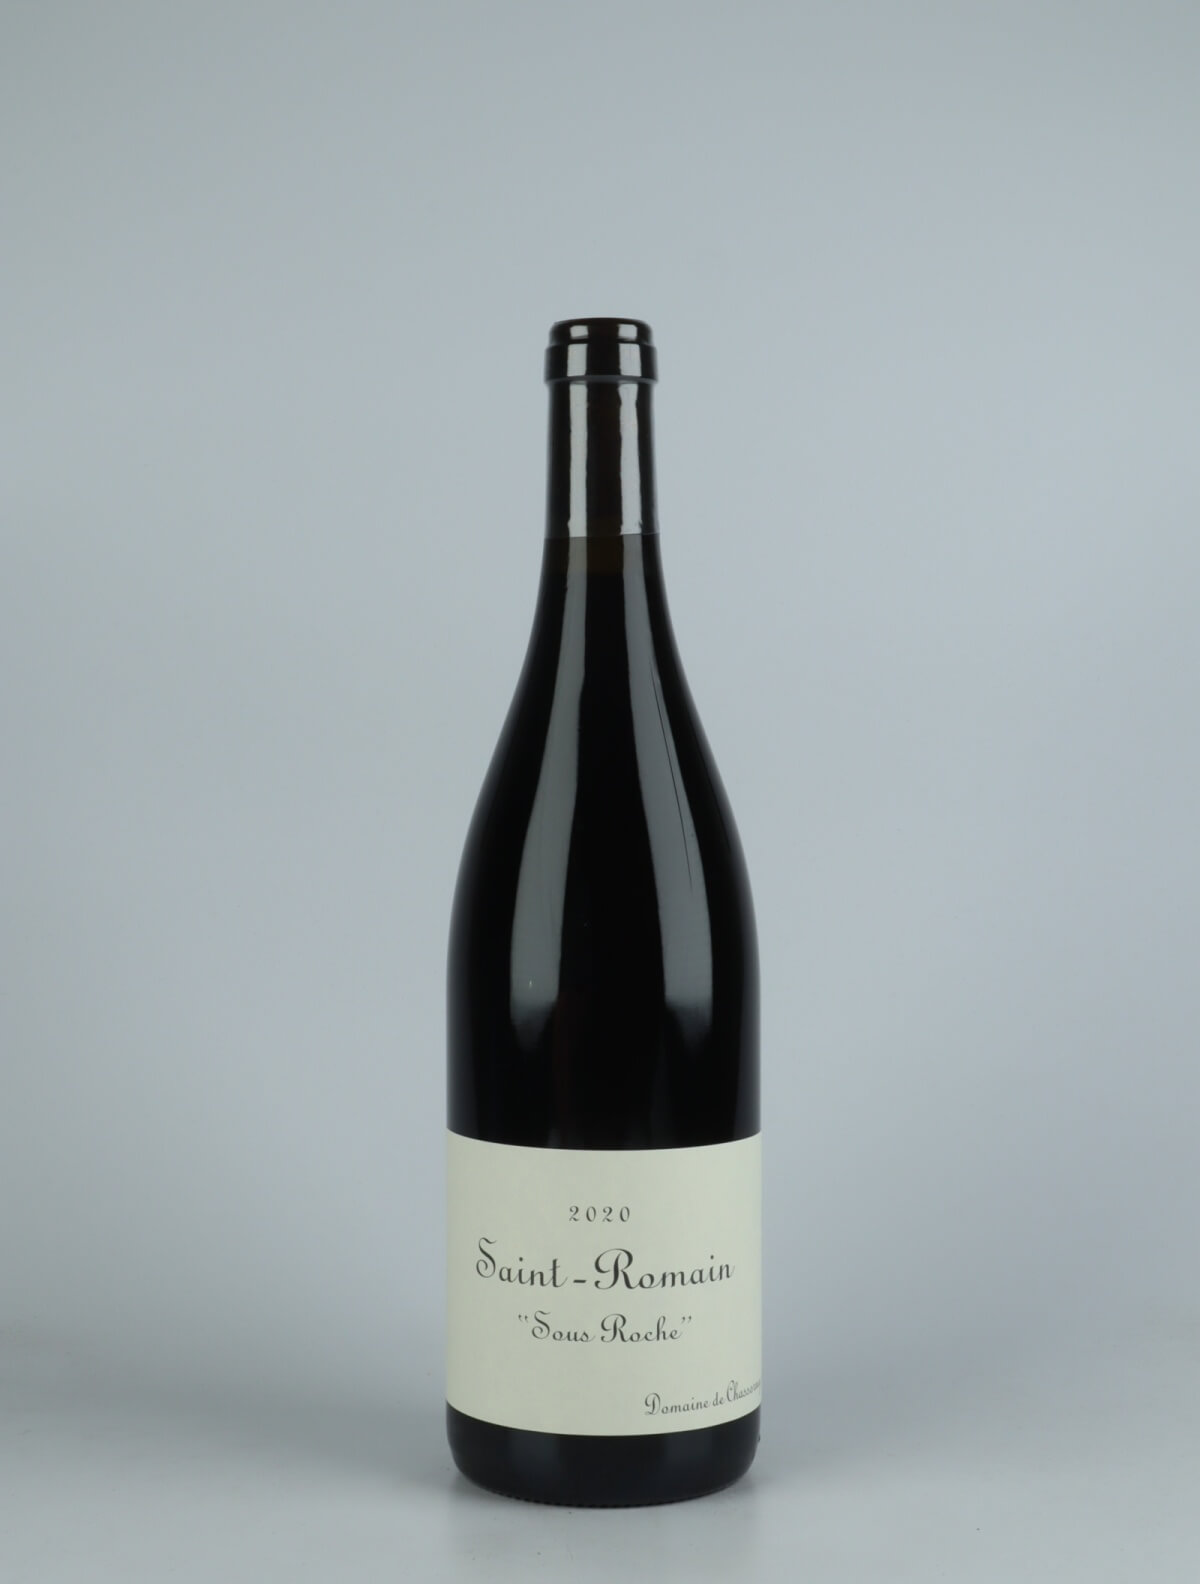 En flaske 2020 Saint Romain Rouge - Sous Roche Rødvin fra Domaine de Chassorney, Bourgogne i Frankrig